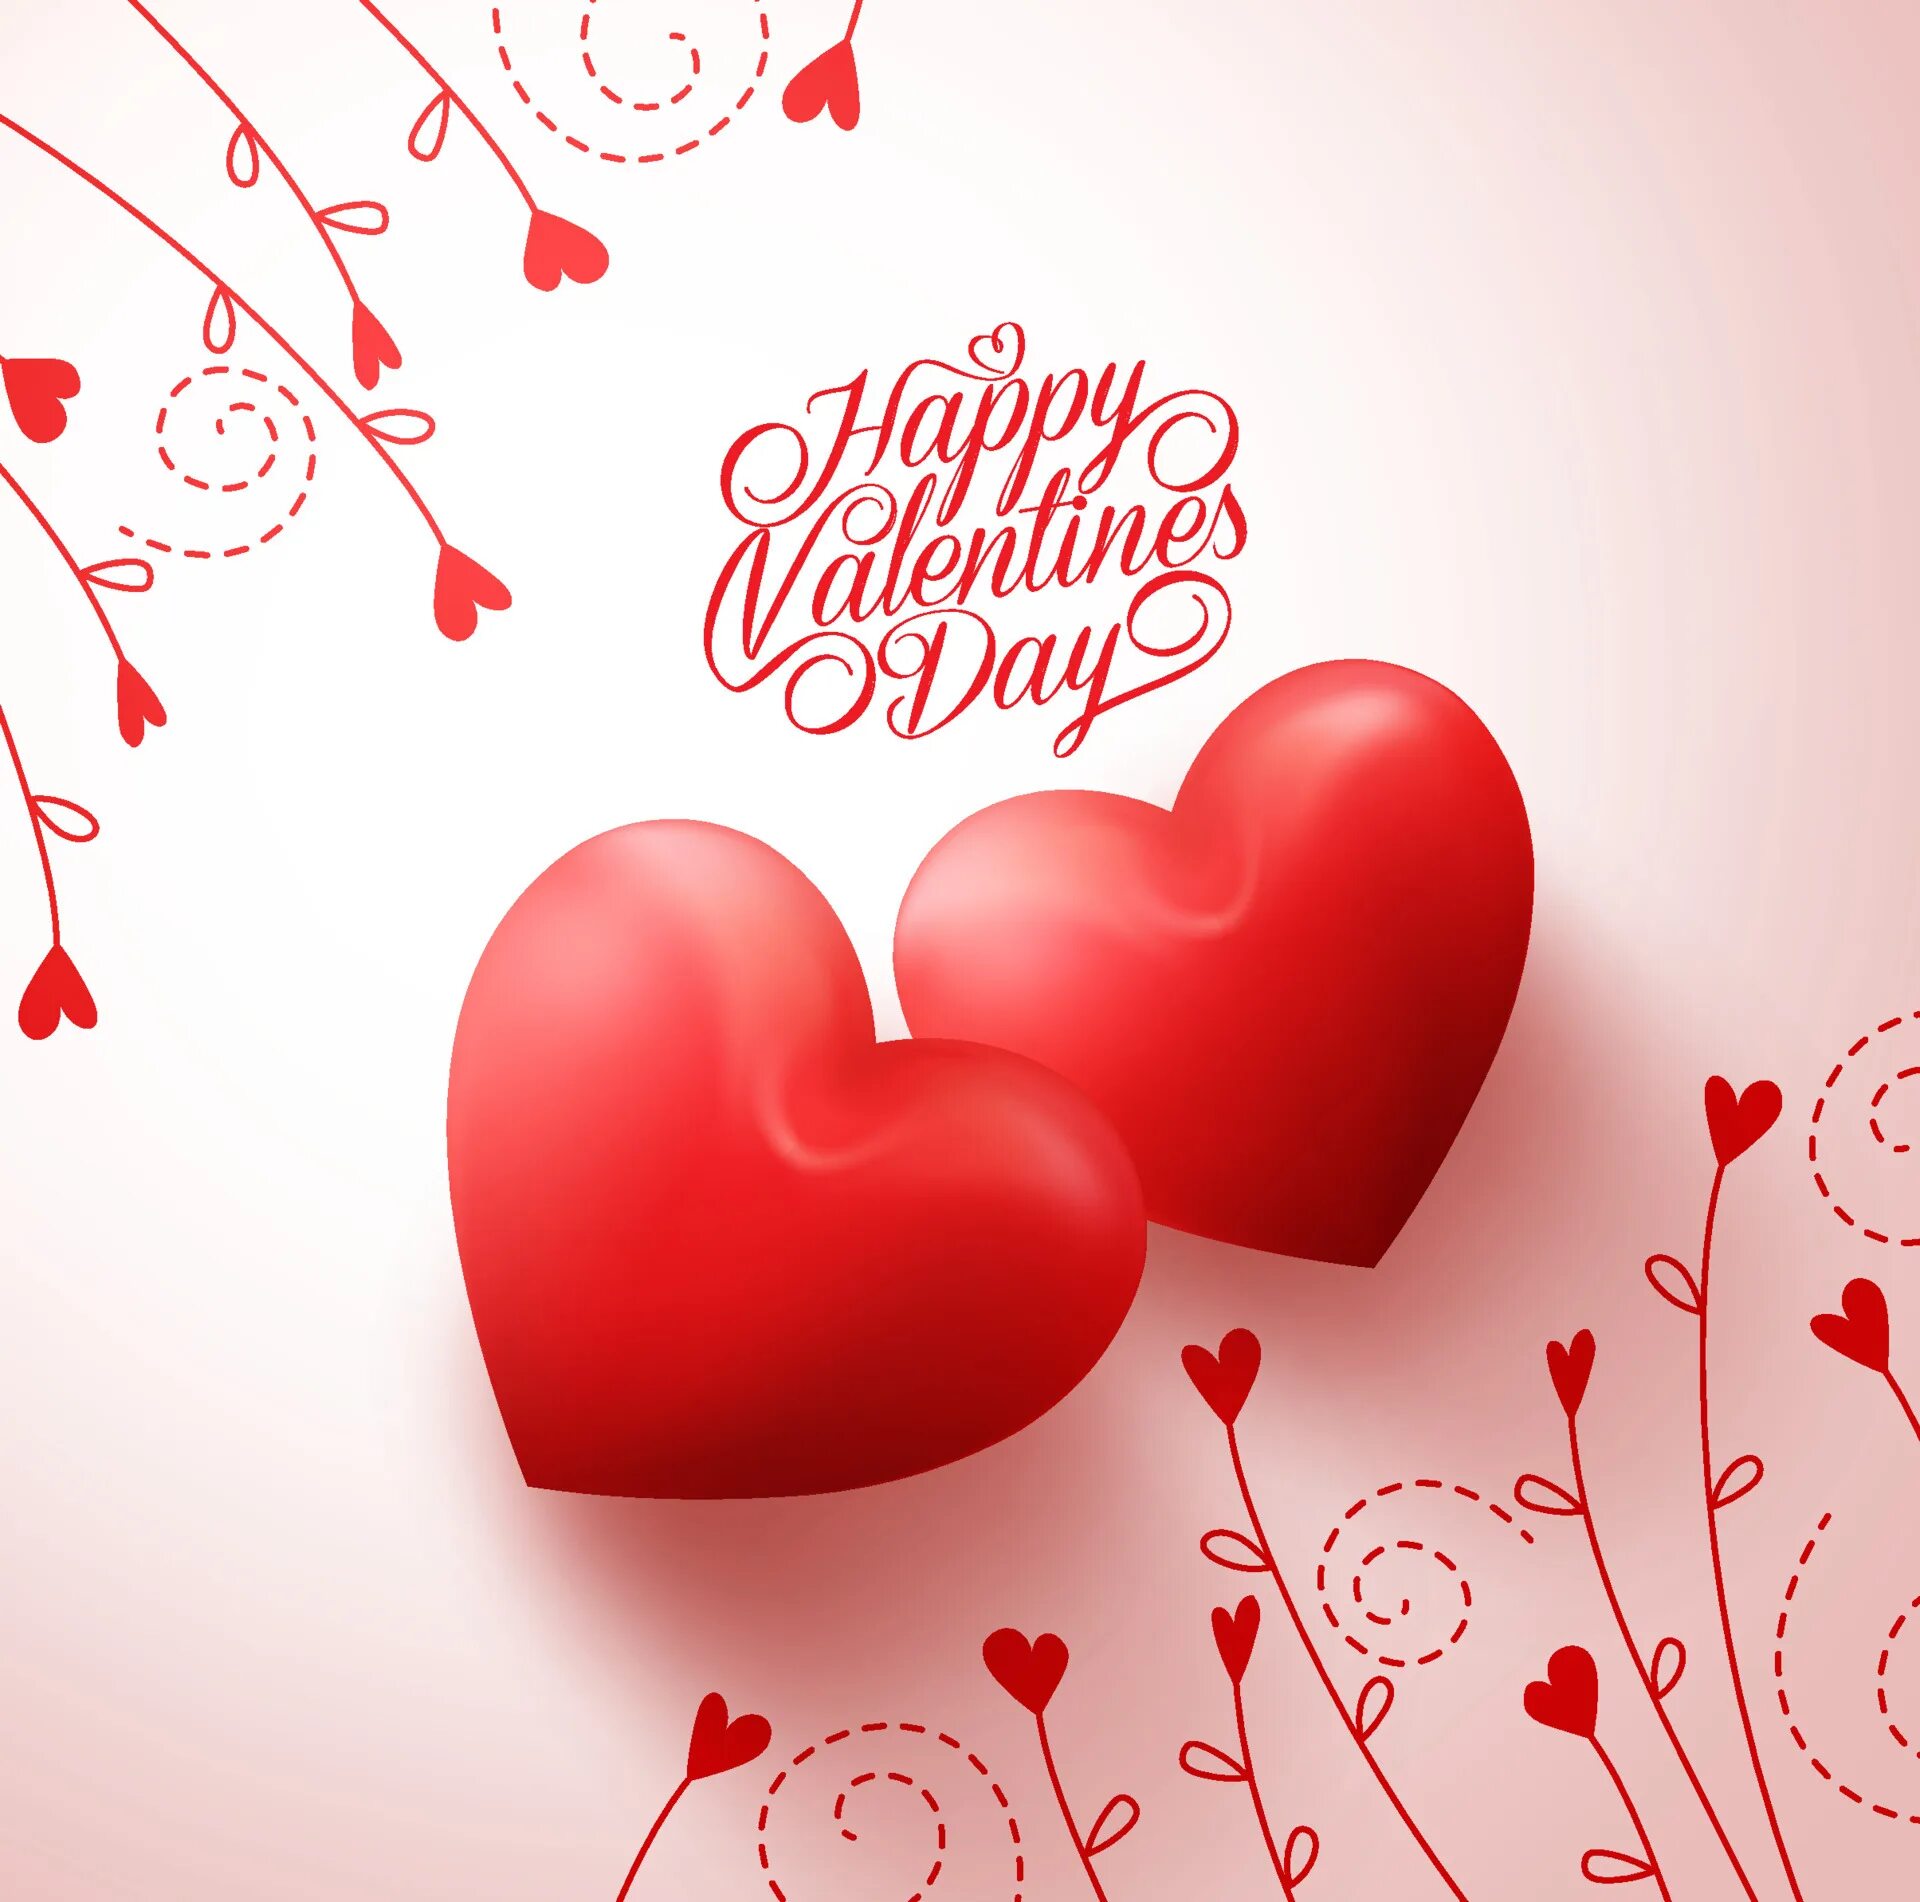 Have a valentine s day. С днем влюбленных. Сднемсветоговвлентина. С днем влюбленных открытки.